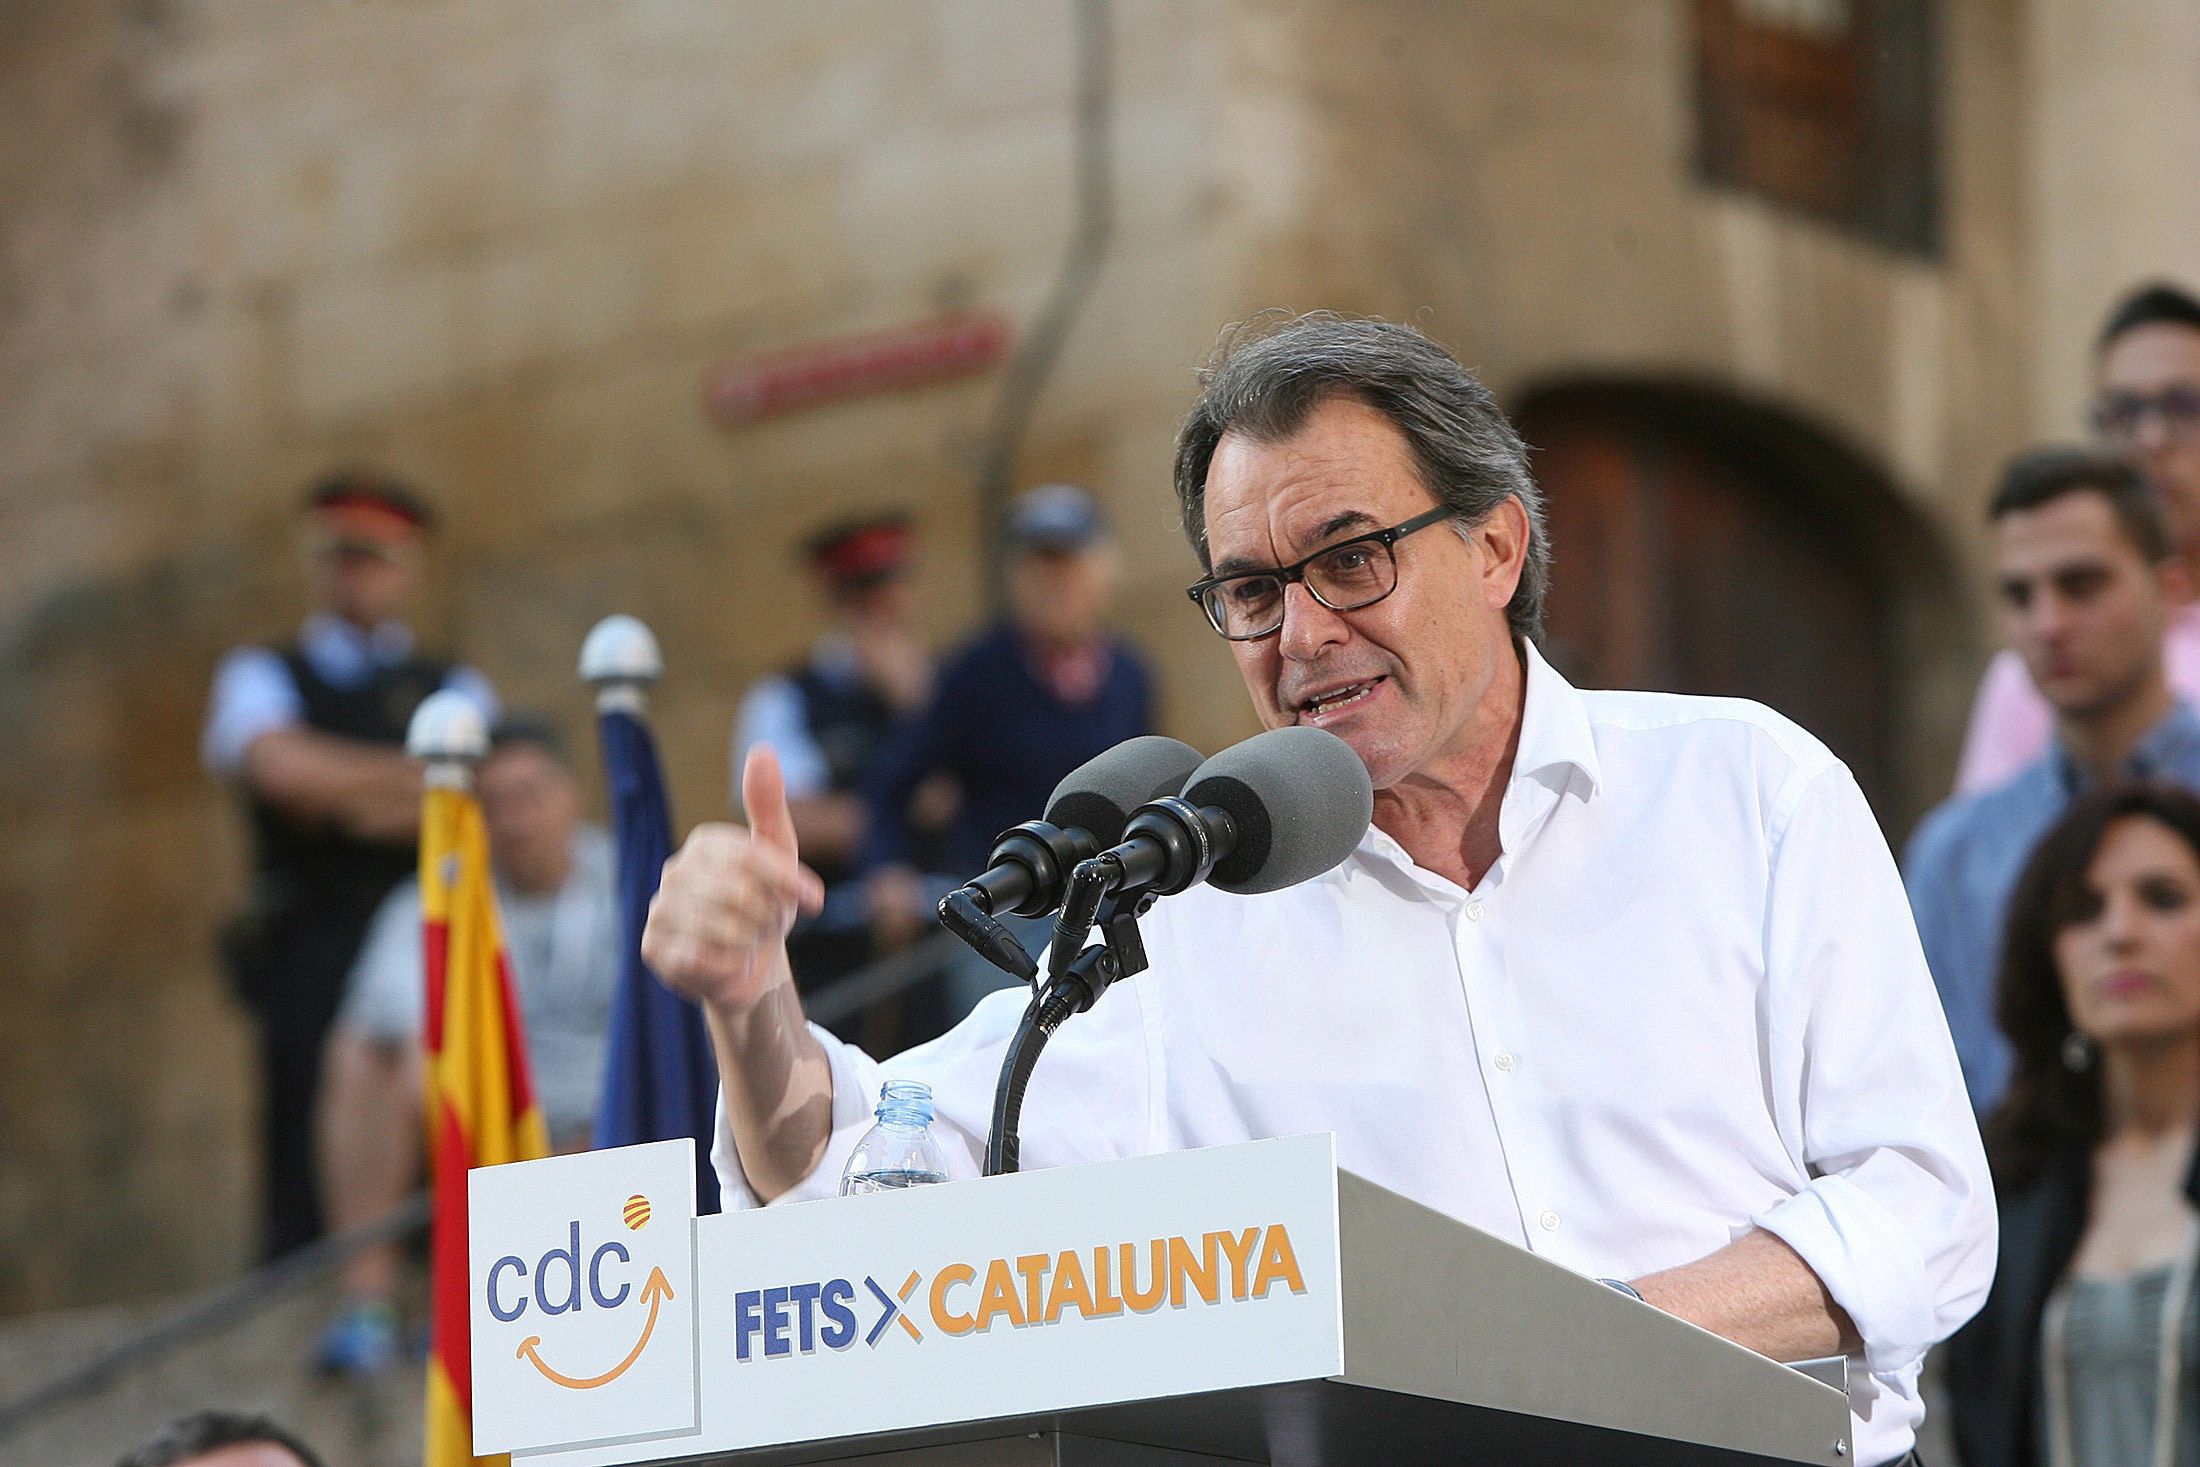 Mas replica a Podemos situando a CDC como el partido del “cambio con mentalidad catalana”